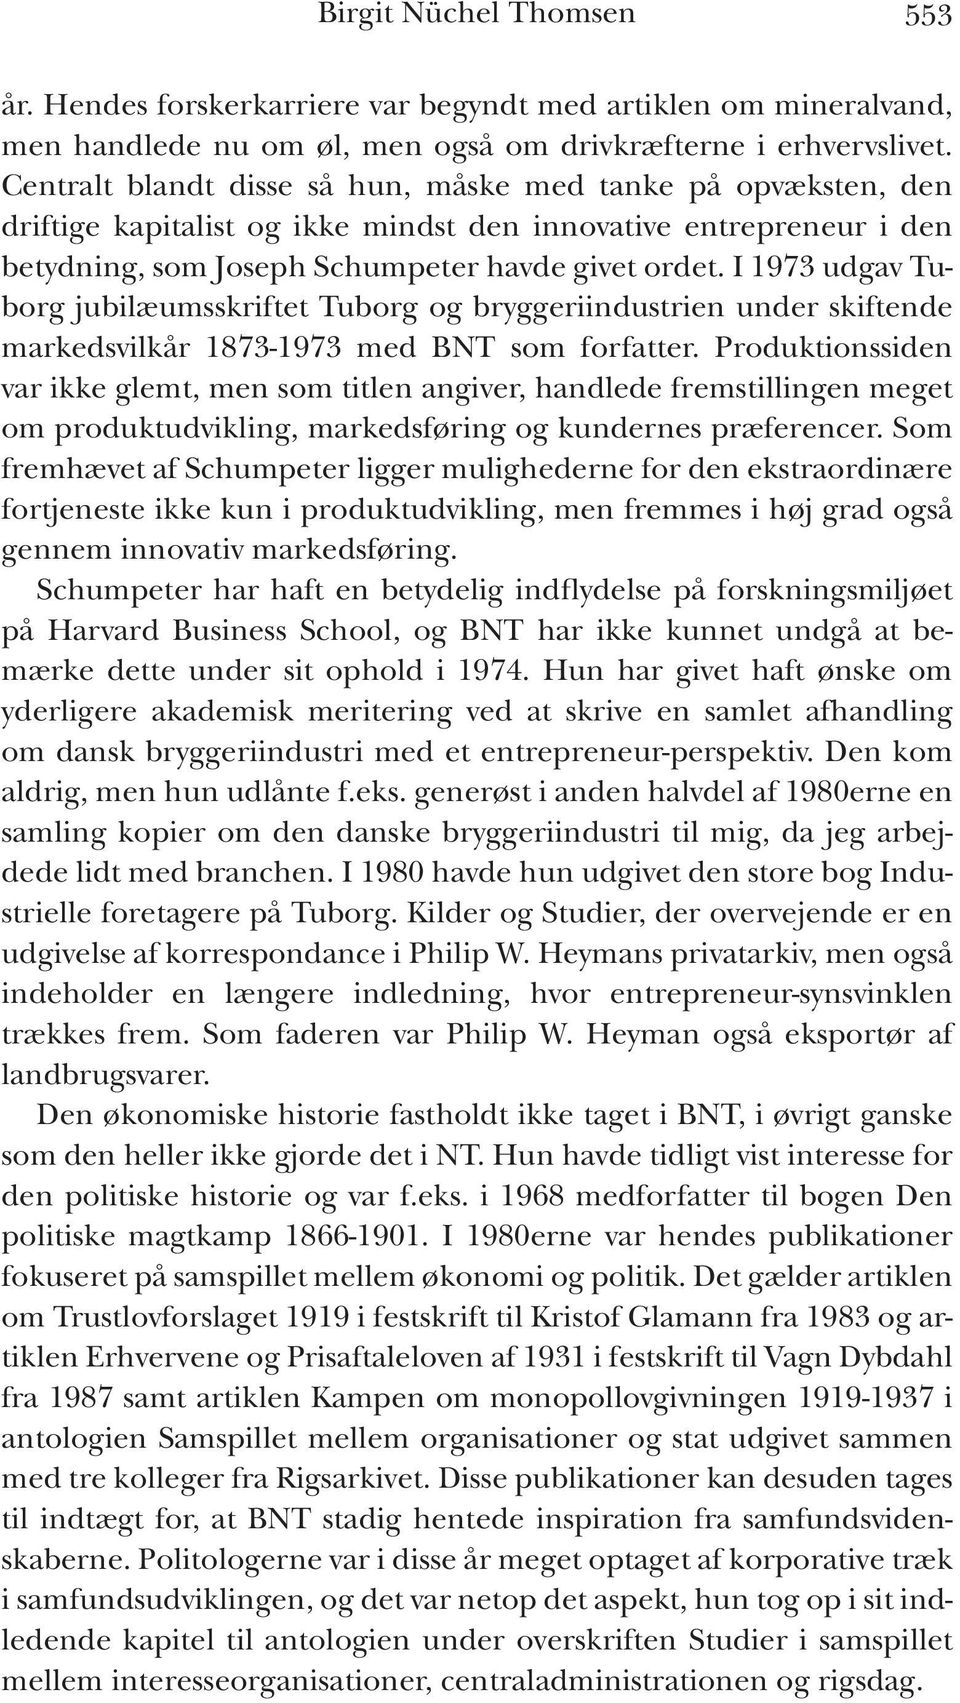 I 1973 udgav Tuborg jubilæumsskriftet Tuborg og bryggeriindustrien under skiftende markedsvilkår 1873-1973 med BNT som forfatter.